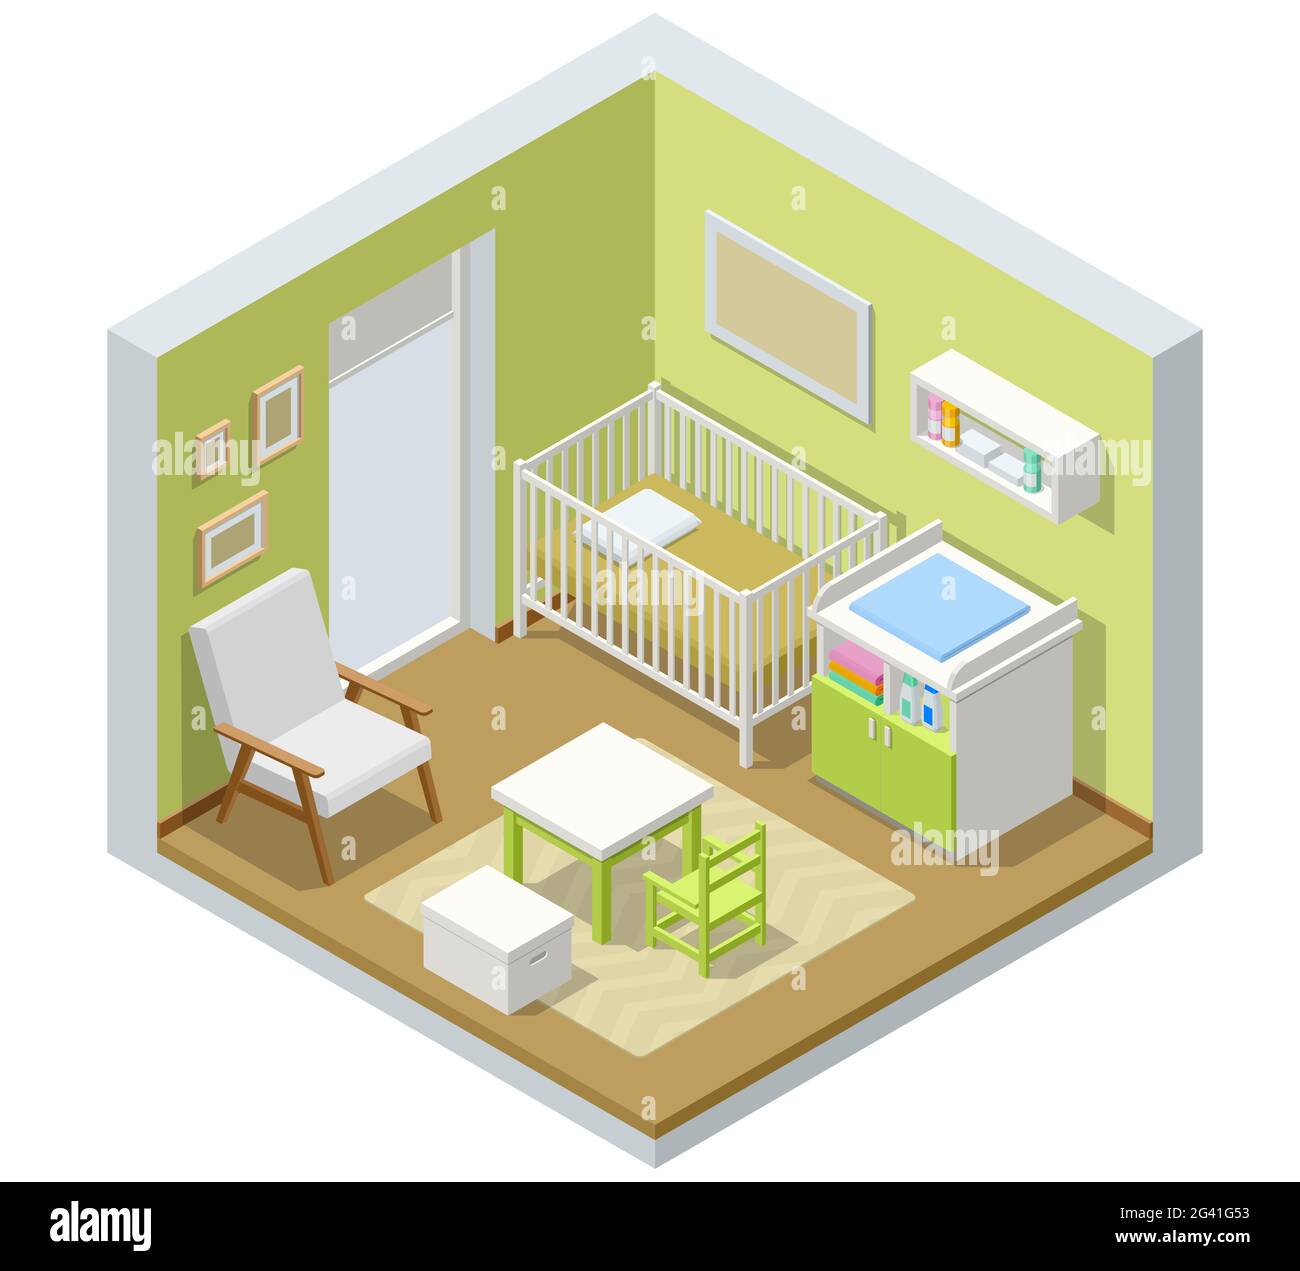 Isometrisches Kinderzimmer mit modernen Möbeln. Die Idee zur  Inneneinrichtung. Kinderzimmer für ein neugeborenes Baby Stock-Vektorgrafik  - Alamy